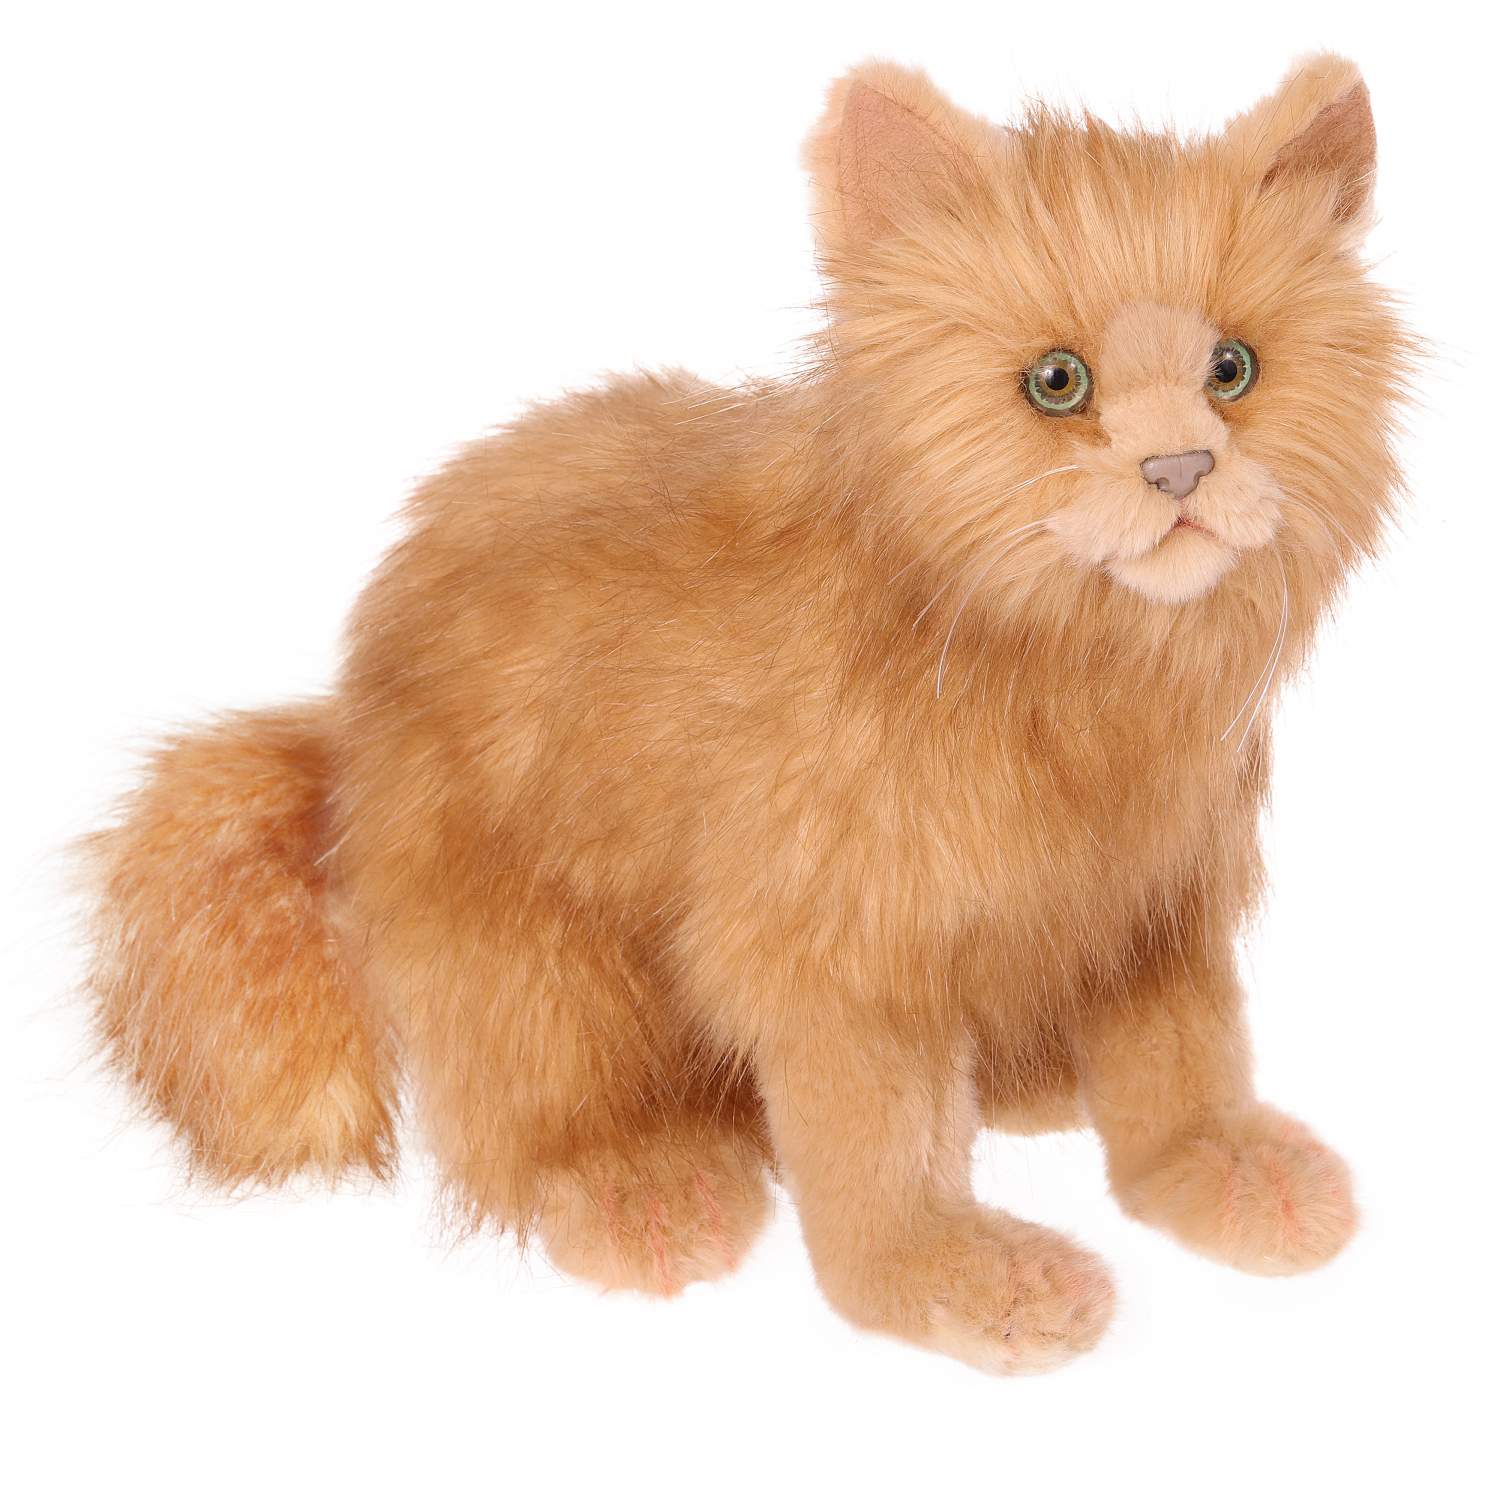 Отзывы о реалистичная мягкая игрушка Hansa Creation Кошка, рыжая, 27 см -  отзывы покупателей на Мегамаркет | мягкие игрушки 4223 - 100002123377